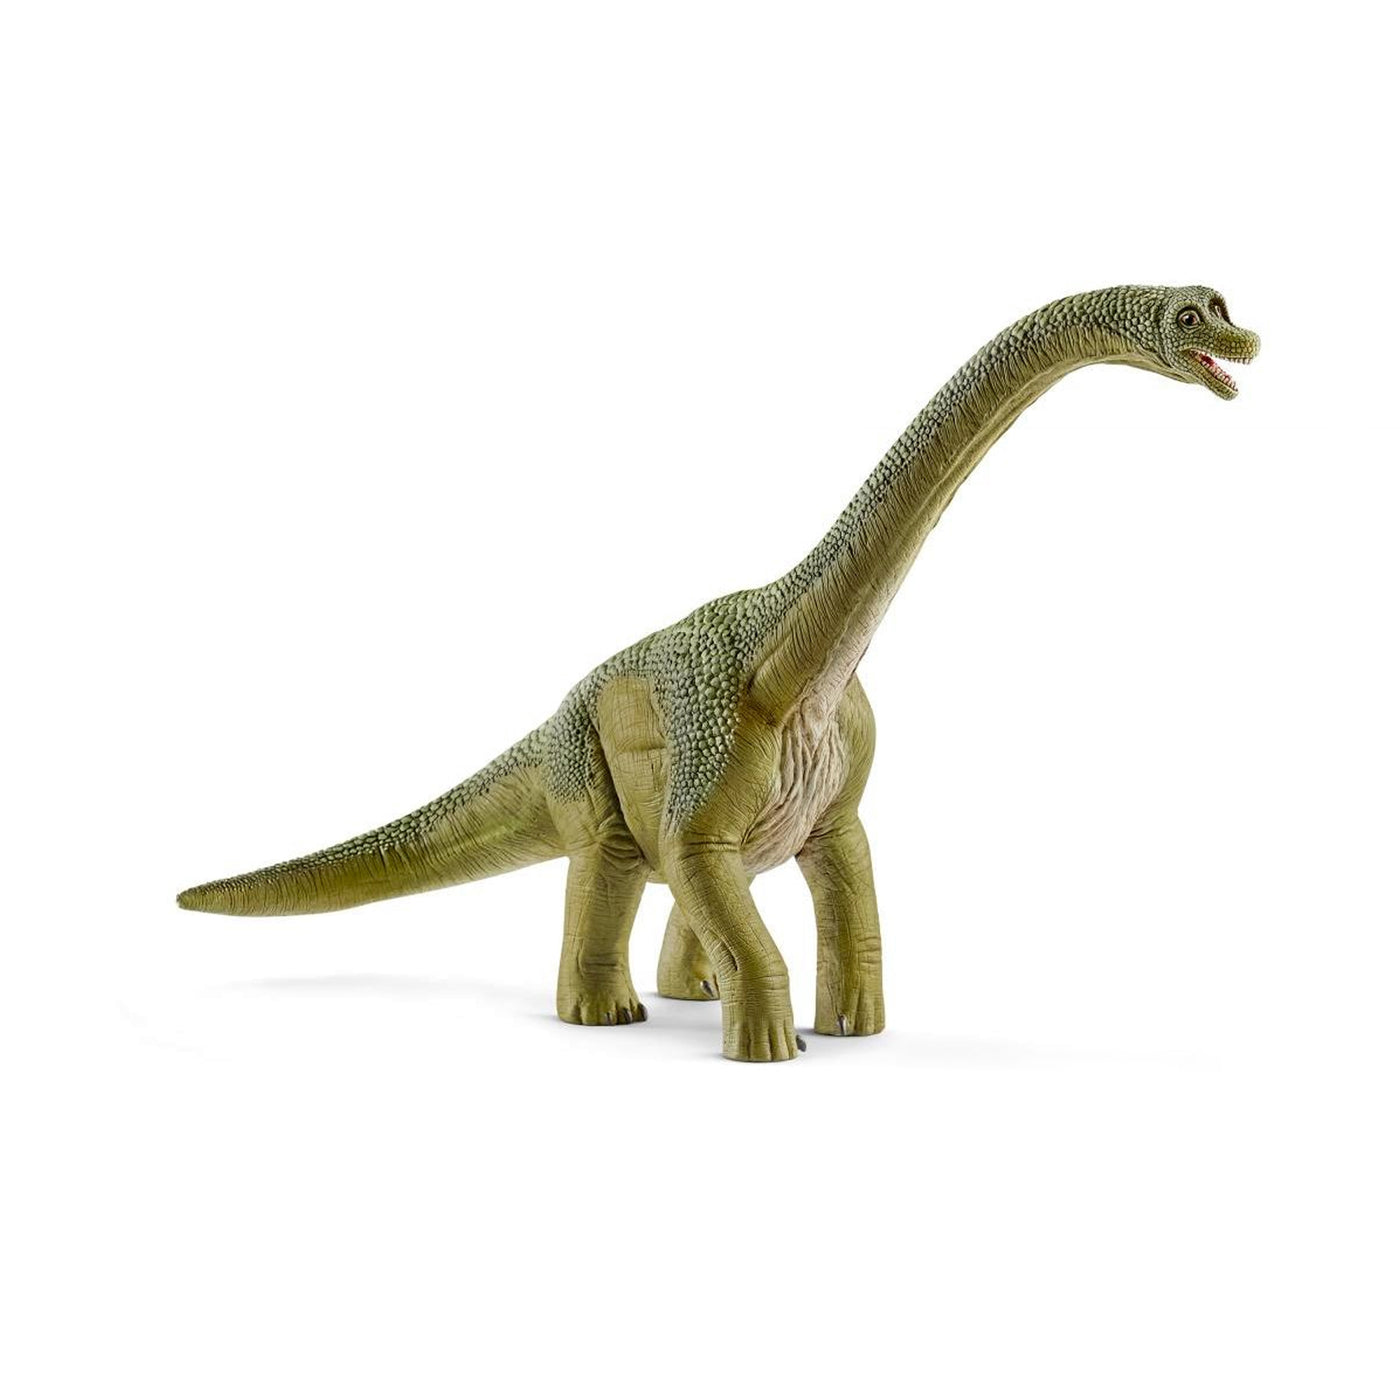 Schleich Dinosaurs Brachiosaurus Toy Figurine